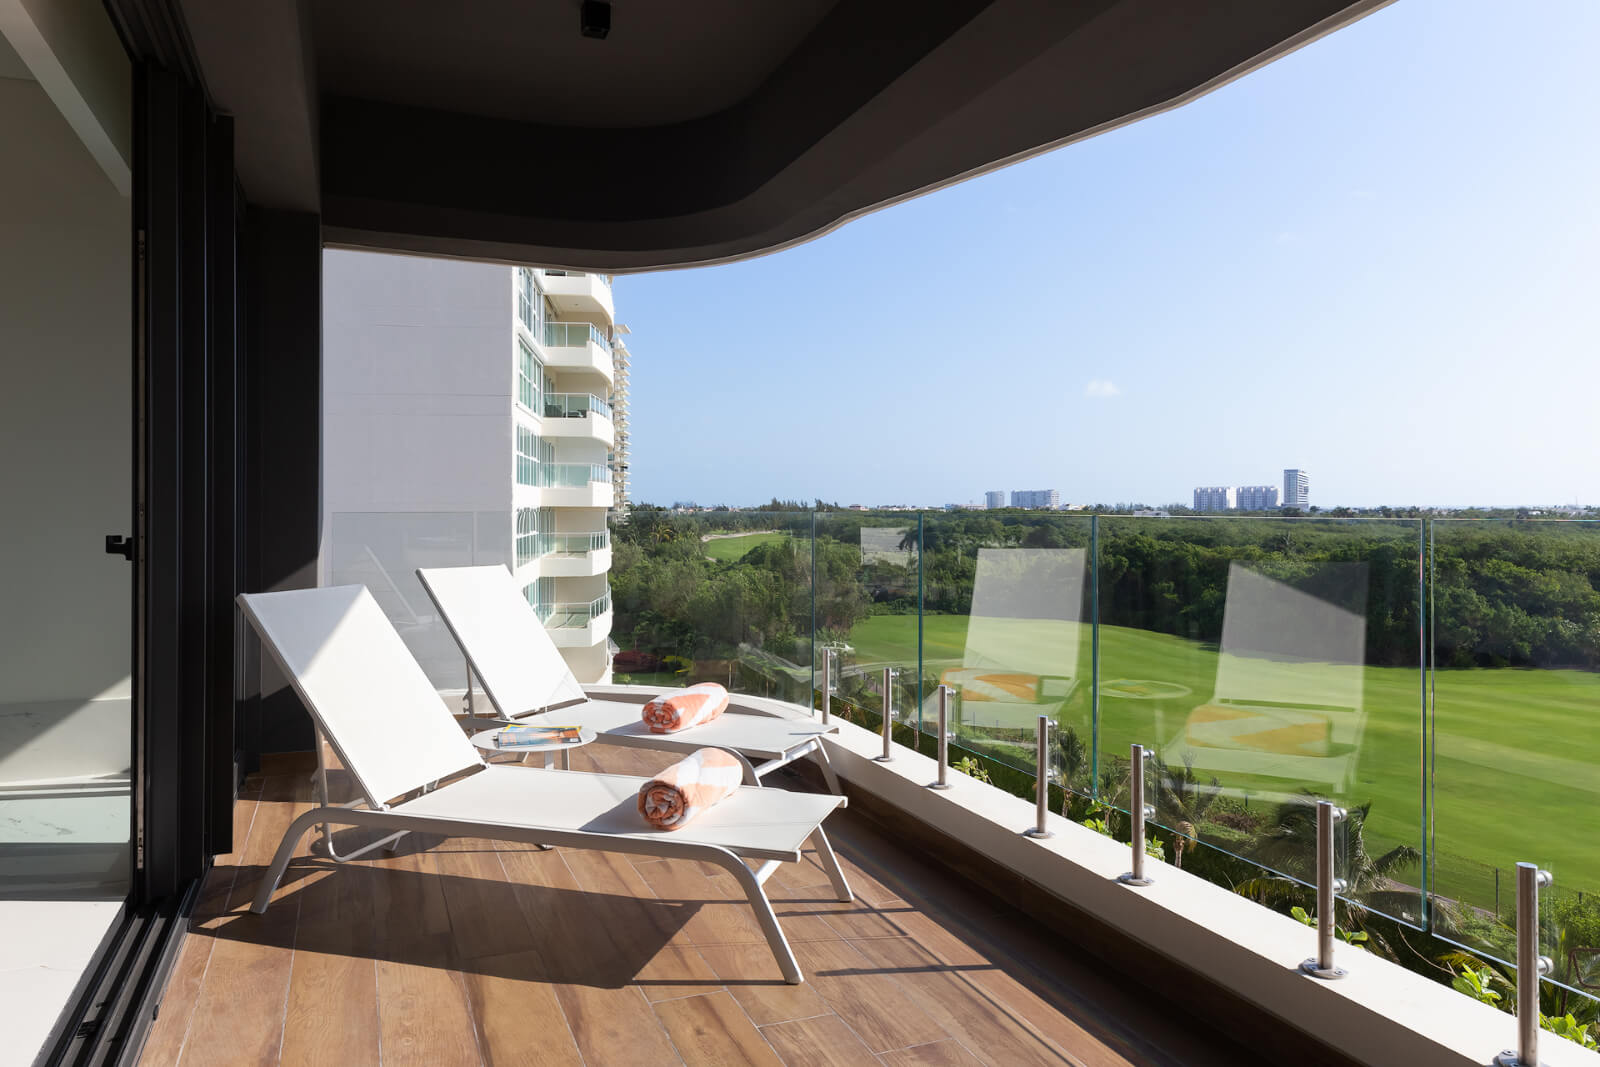 Condominio en edificio sustentable con vista al mar, campo de golf y reserva natural. Totalmente equipado y con amenidades, alberca